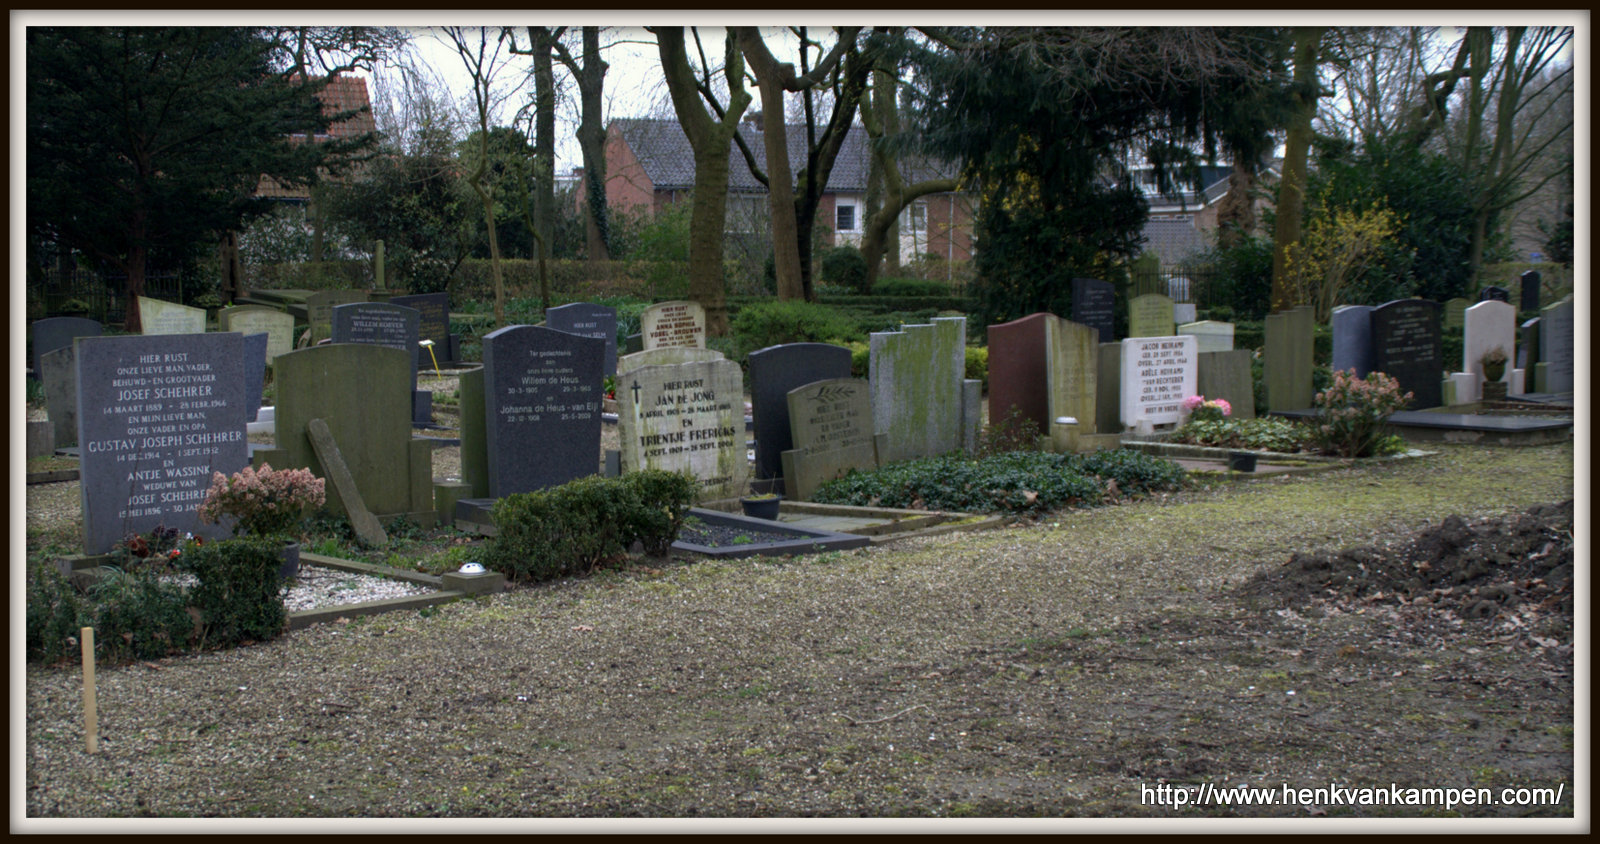 Kerkveld cemetery, Nieuwegein